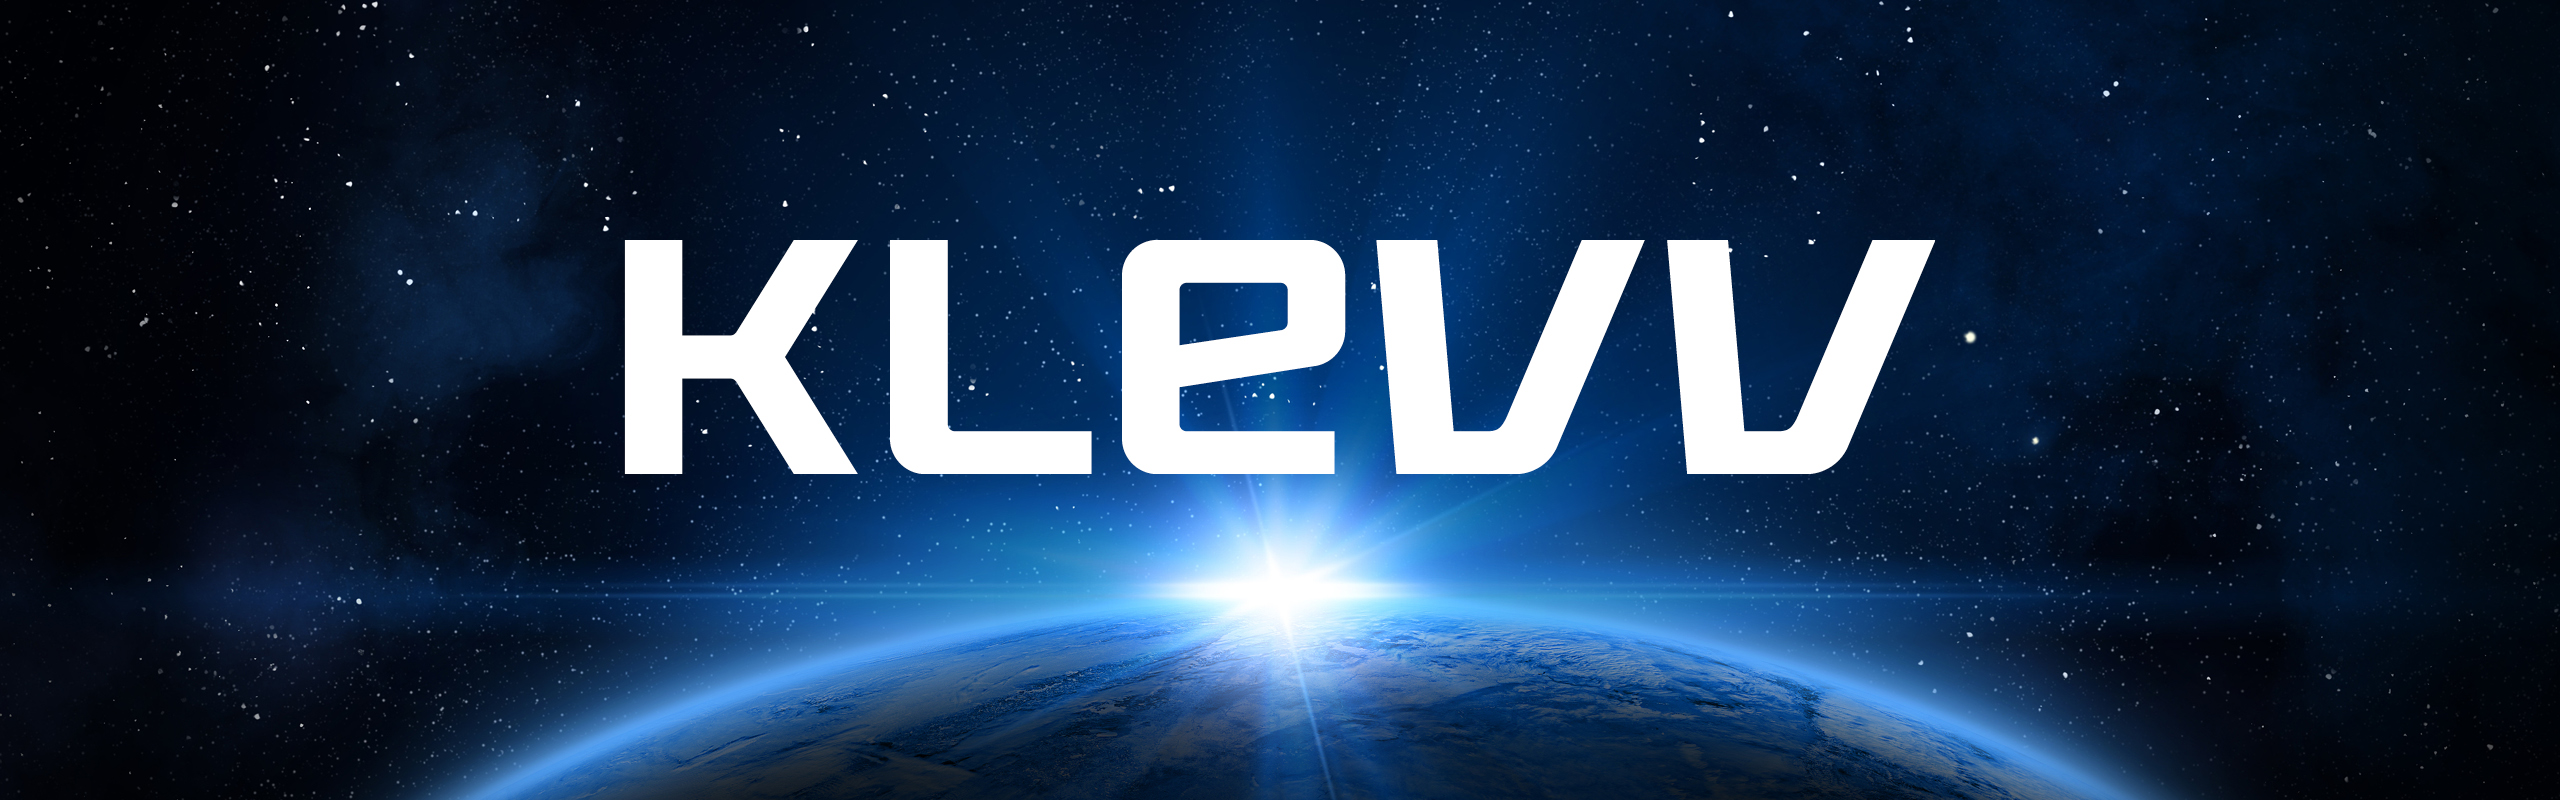 KLEVV landing page header image